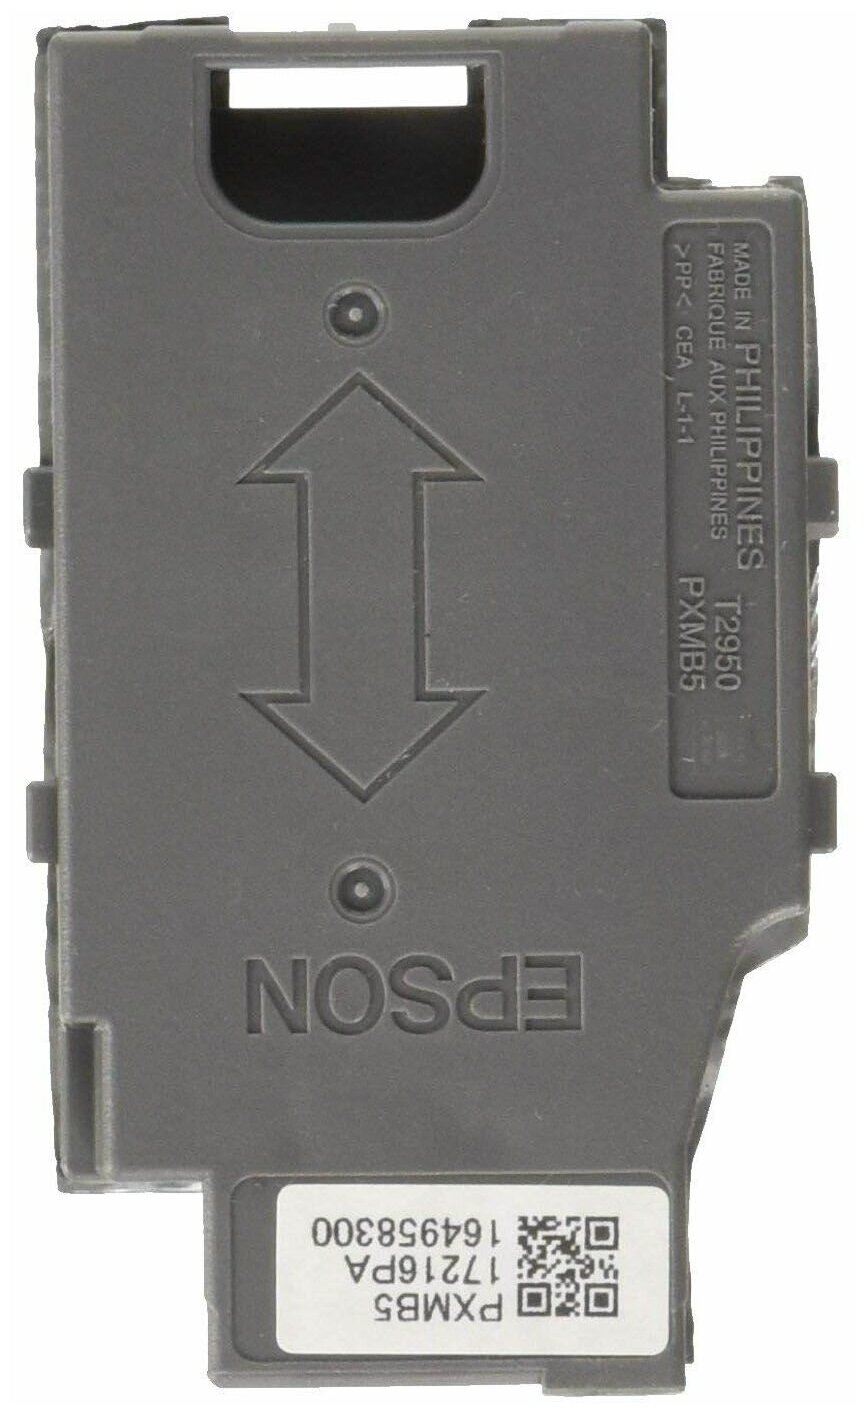 Емкость для сбора отработанного тонера Epson C13T295000 для WF-100W